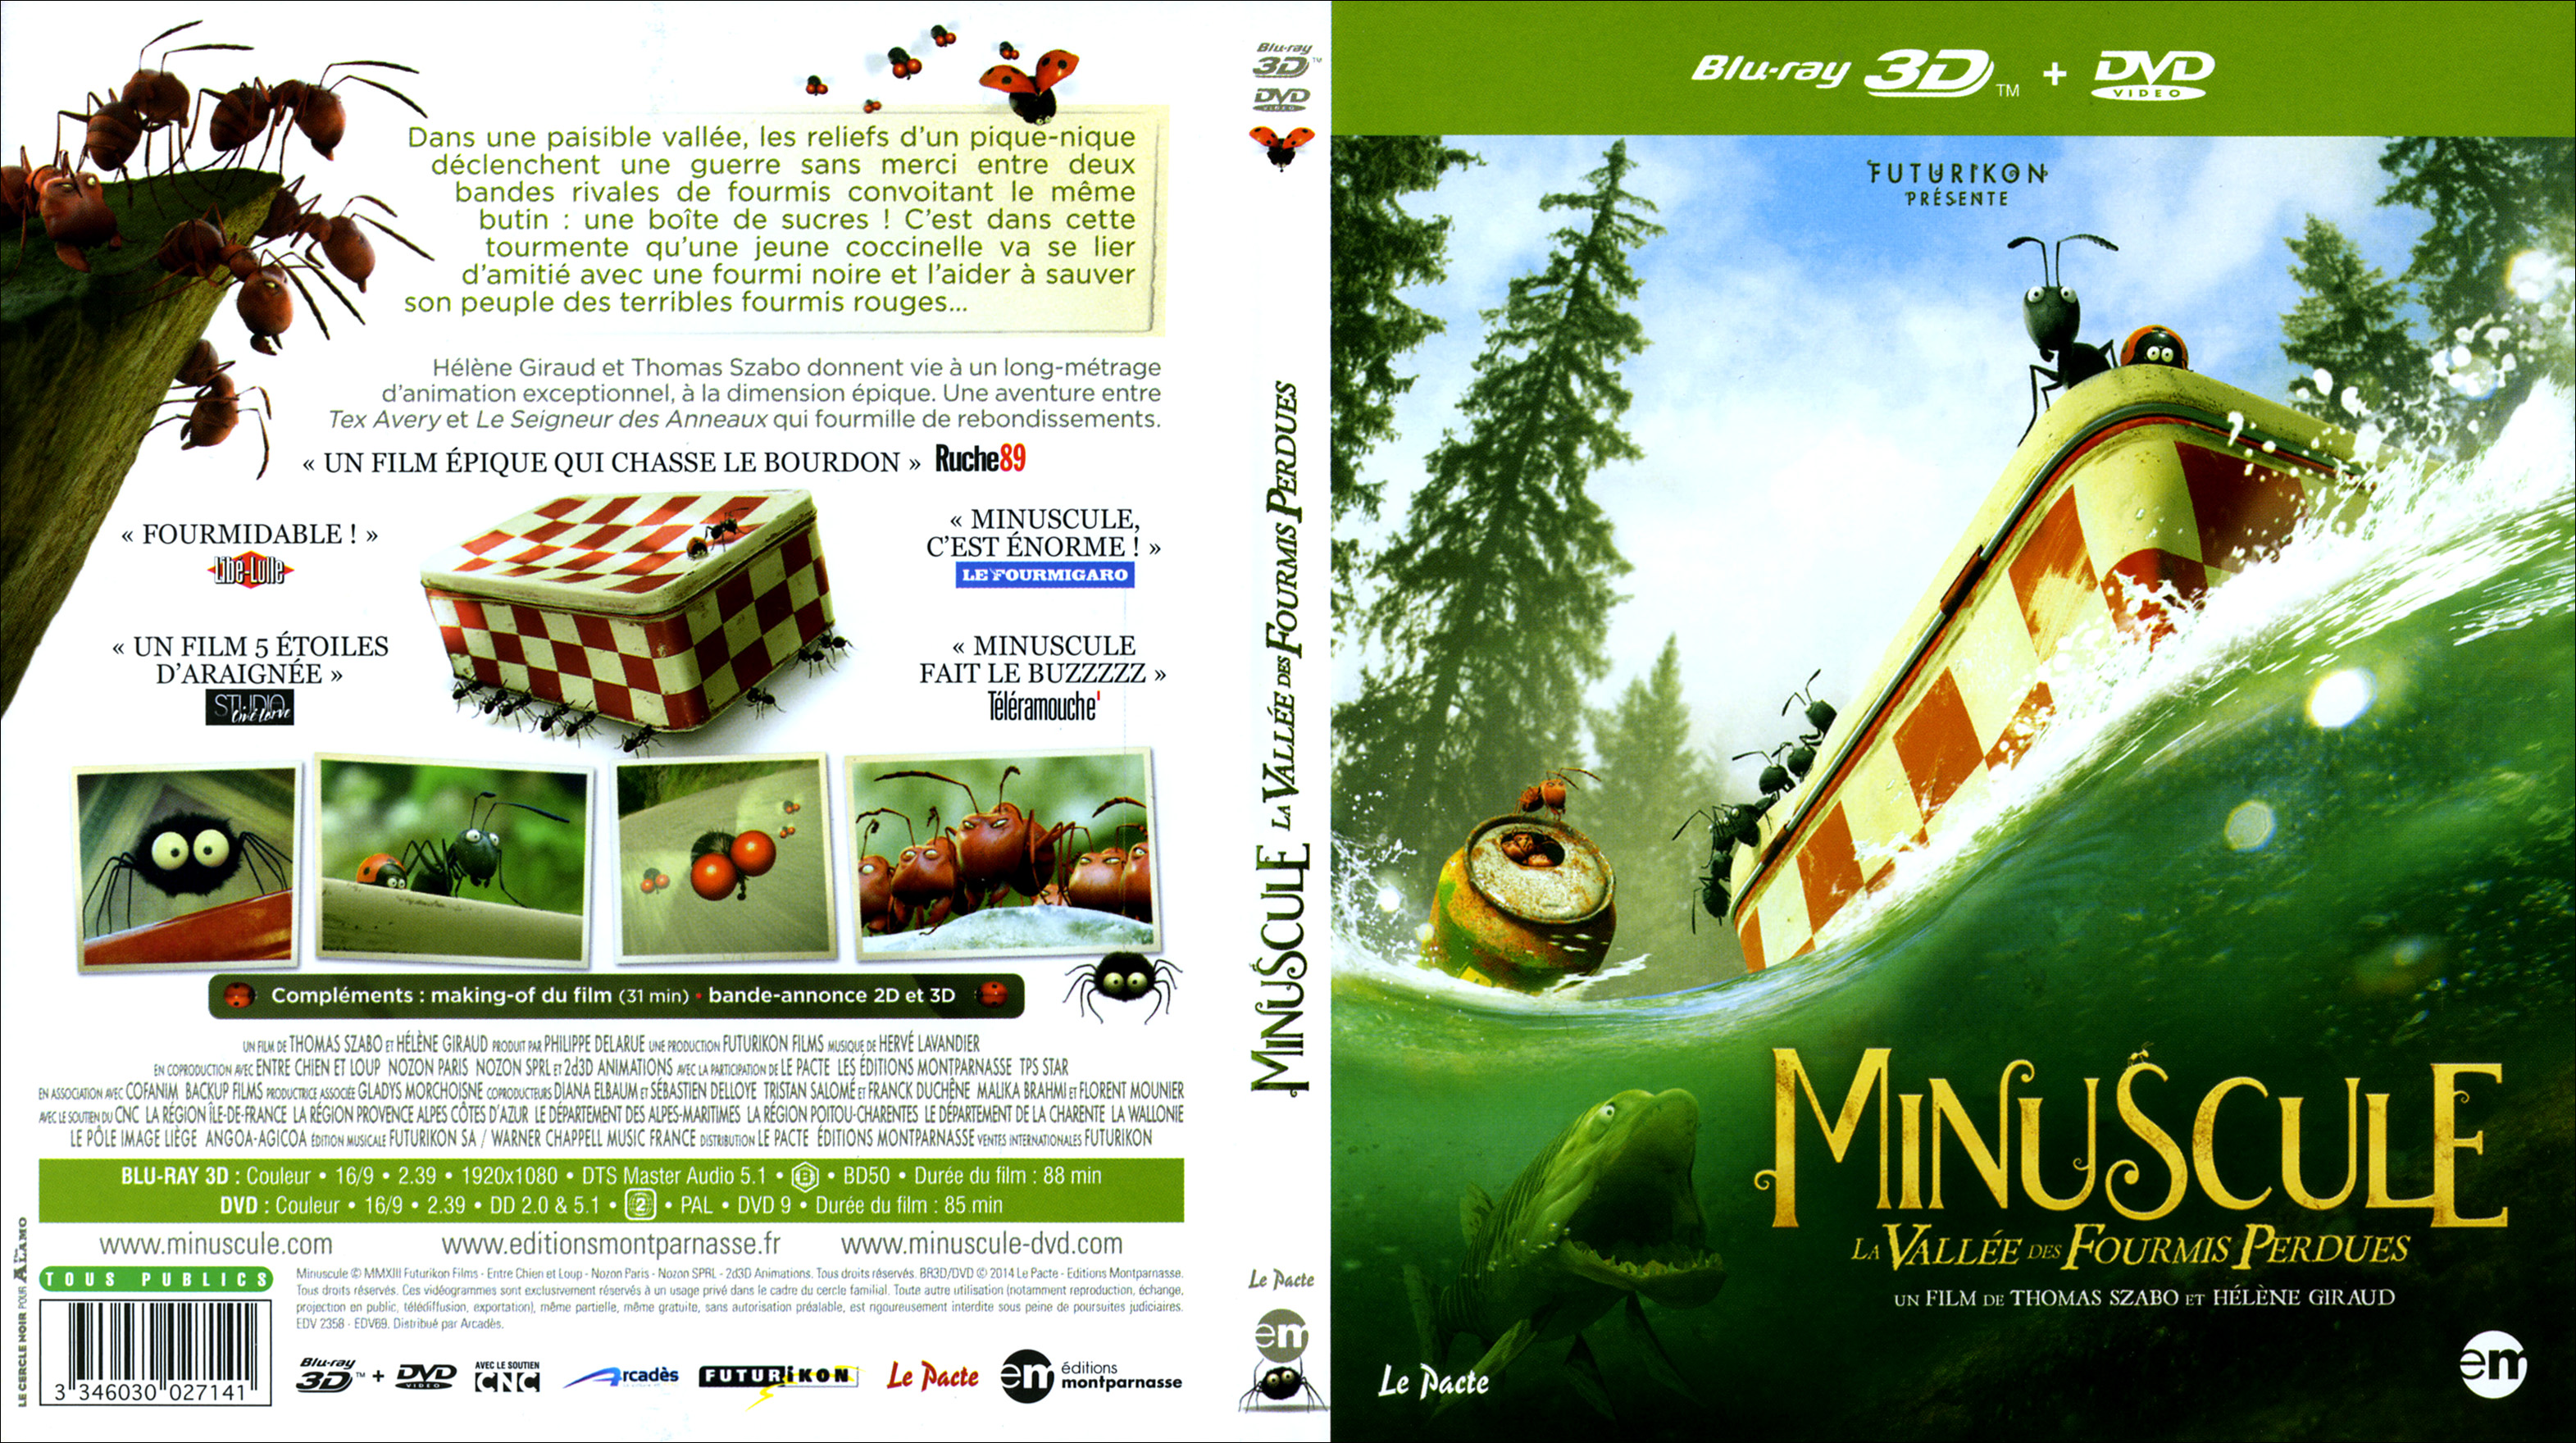 Jaquette DVD Minuscule - La valle des fourmis perdues 3D (BLU-RAY)